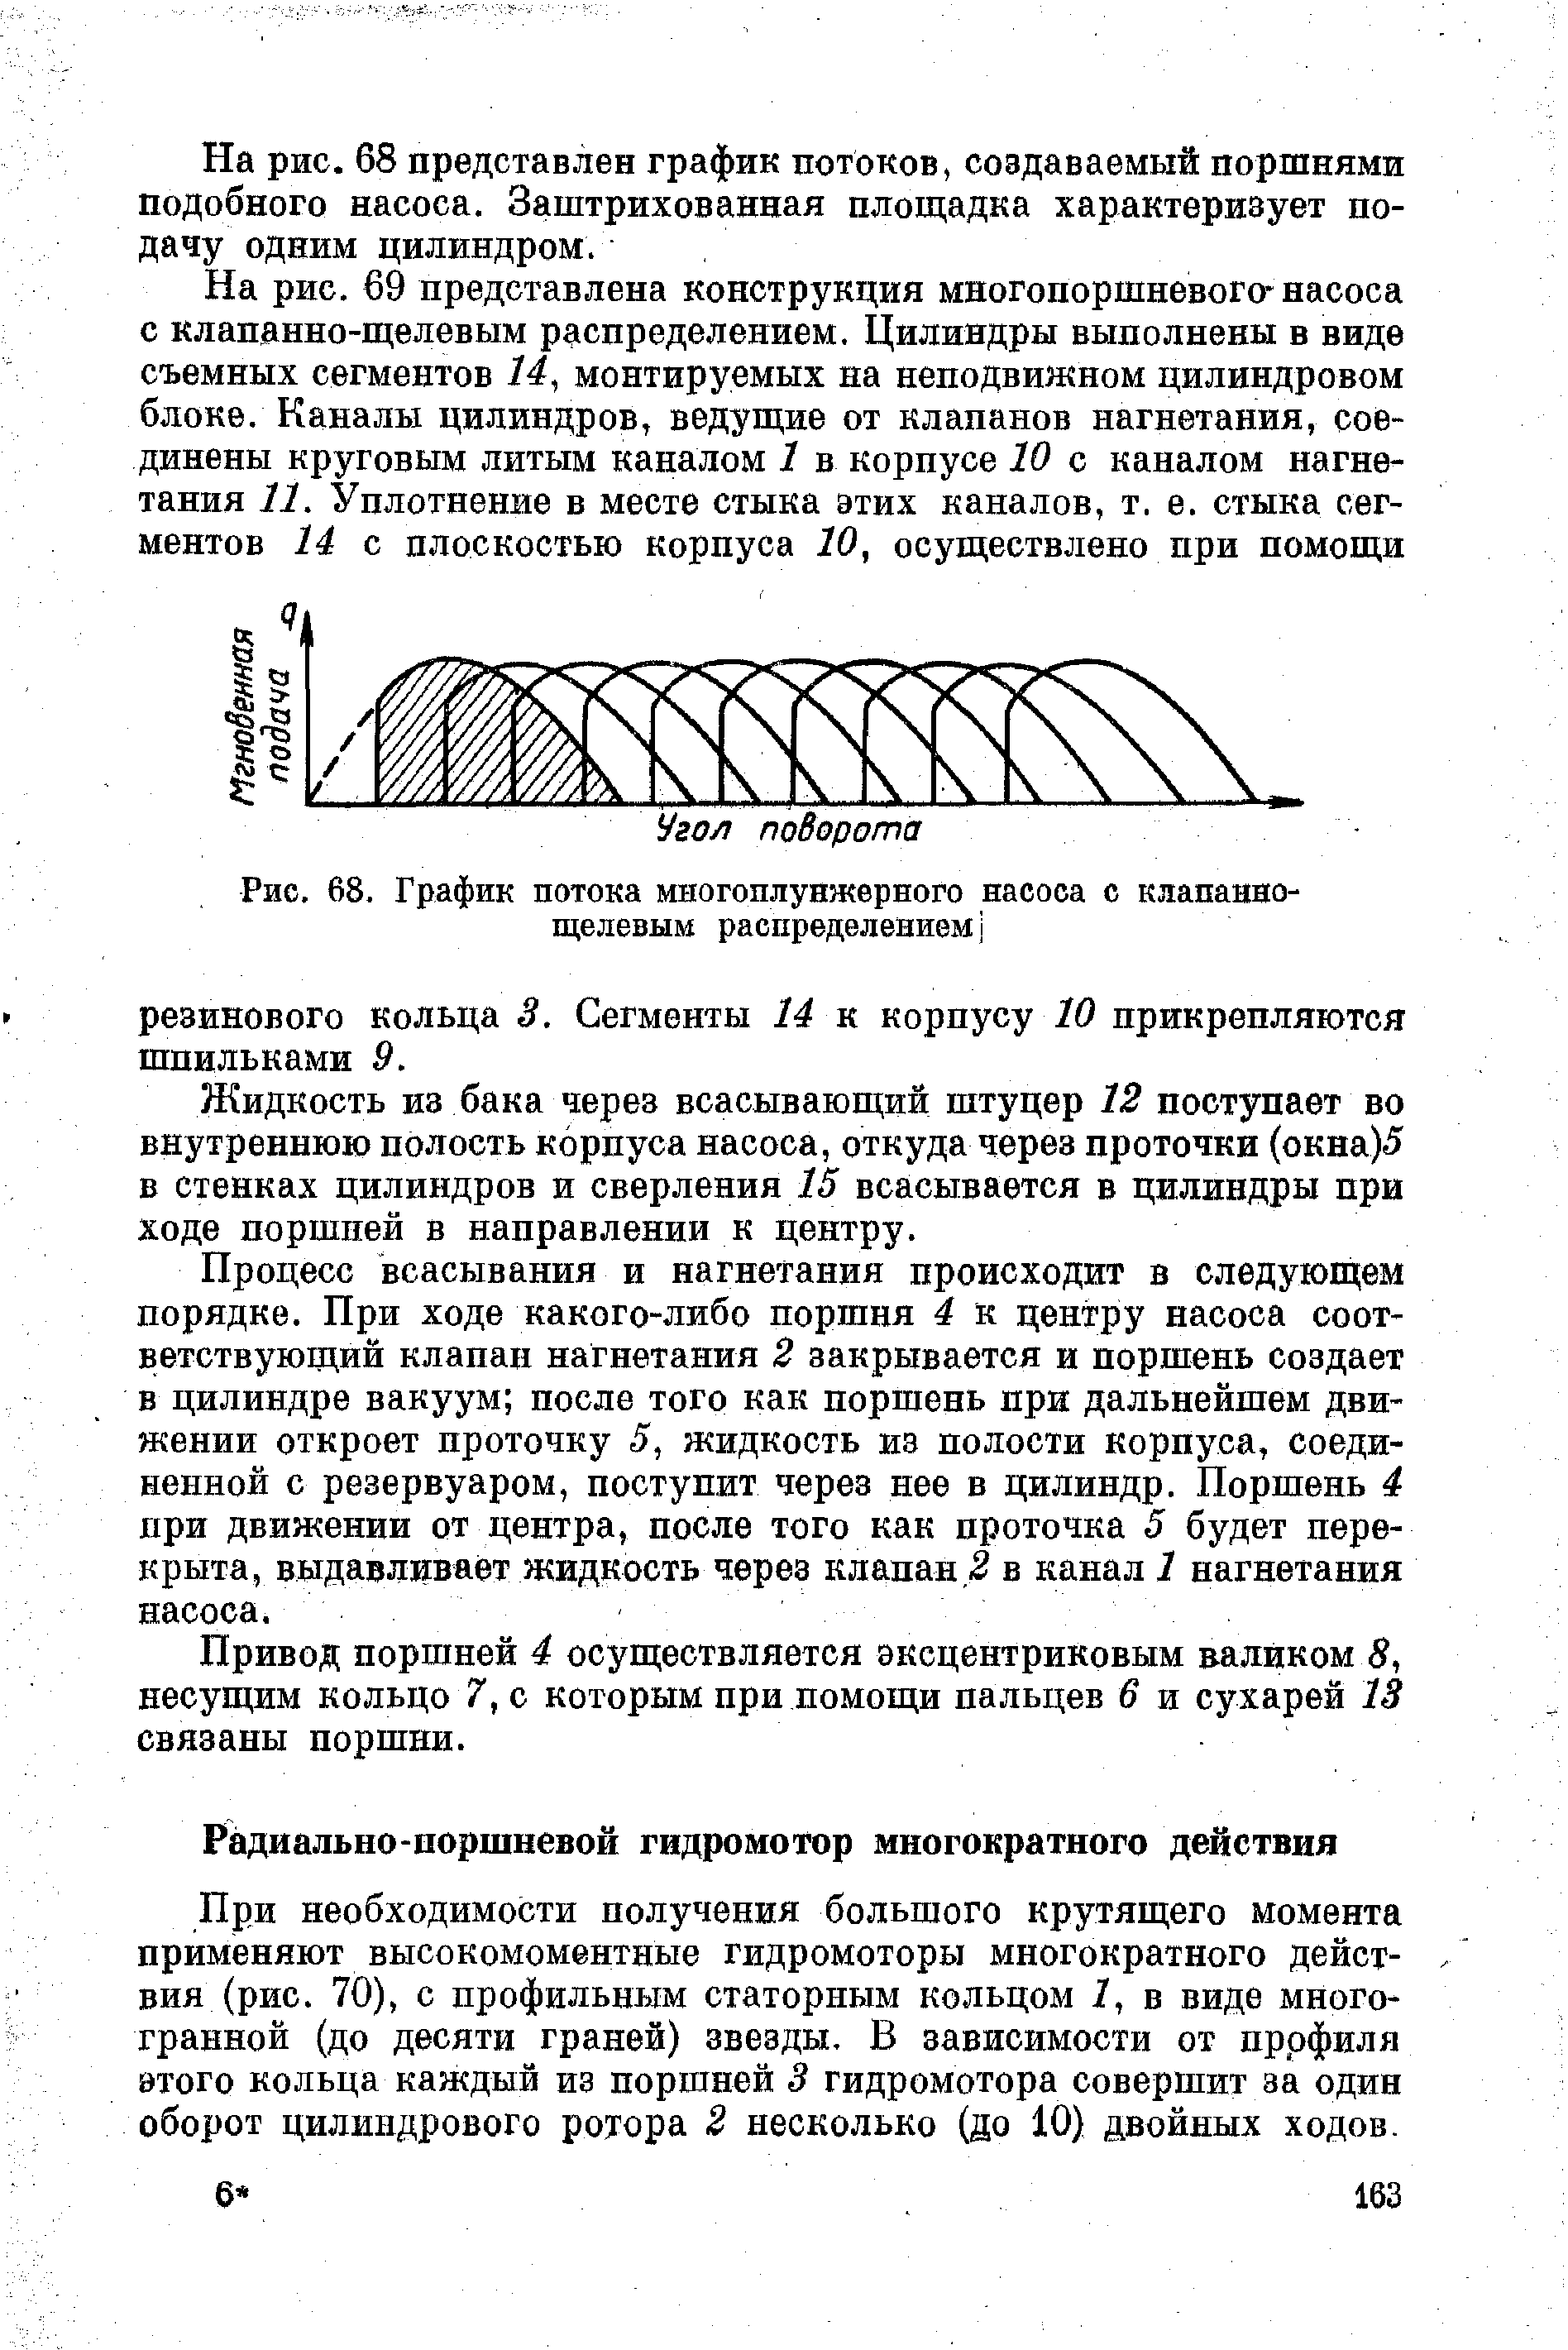 Рис. 68. График потока многоплунжерного насоса с клапаннощелевым распределением j
